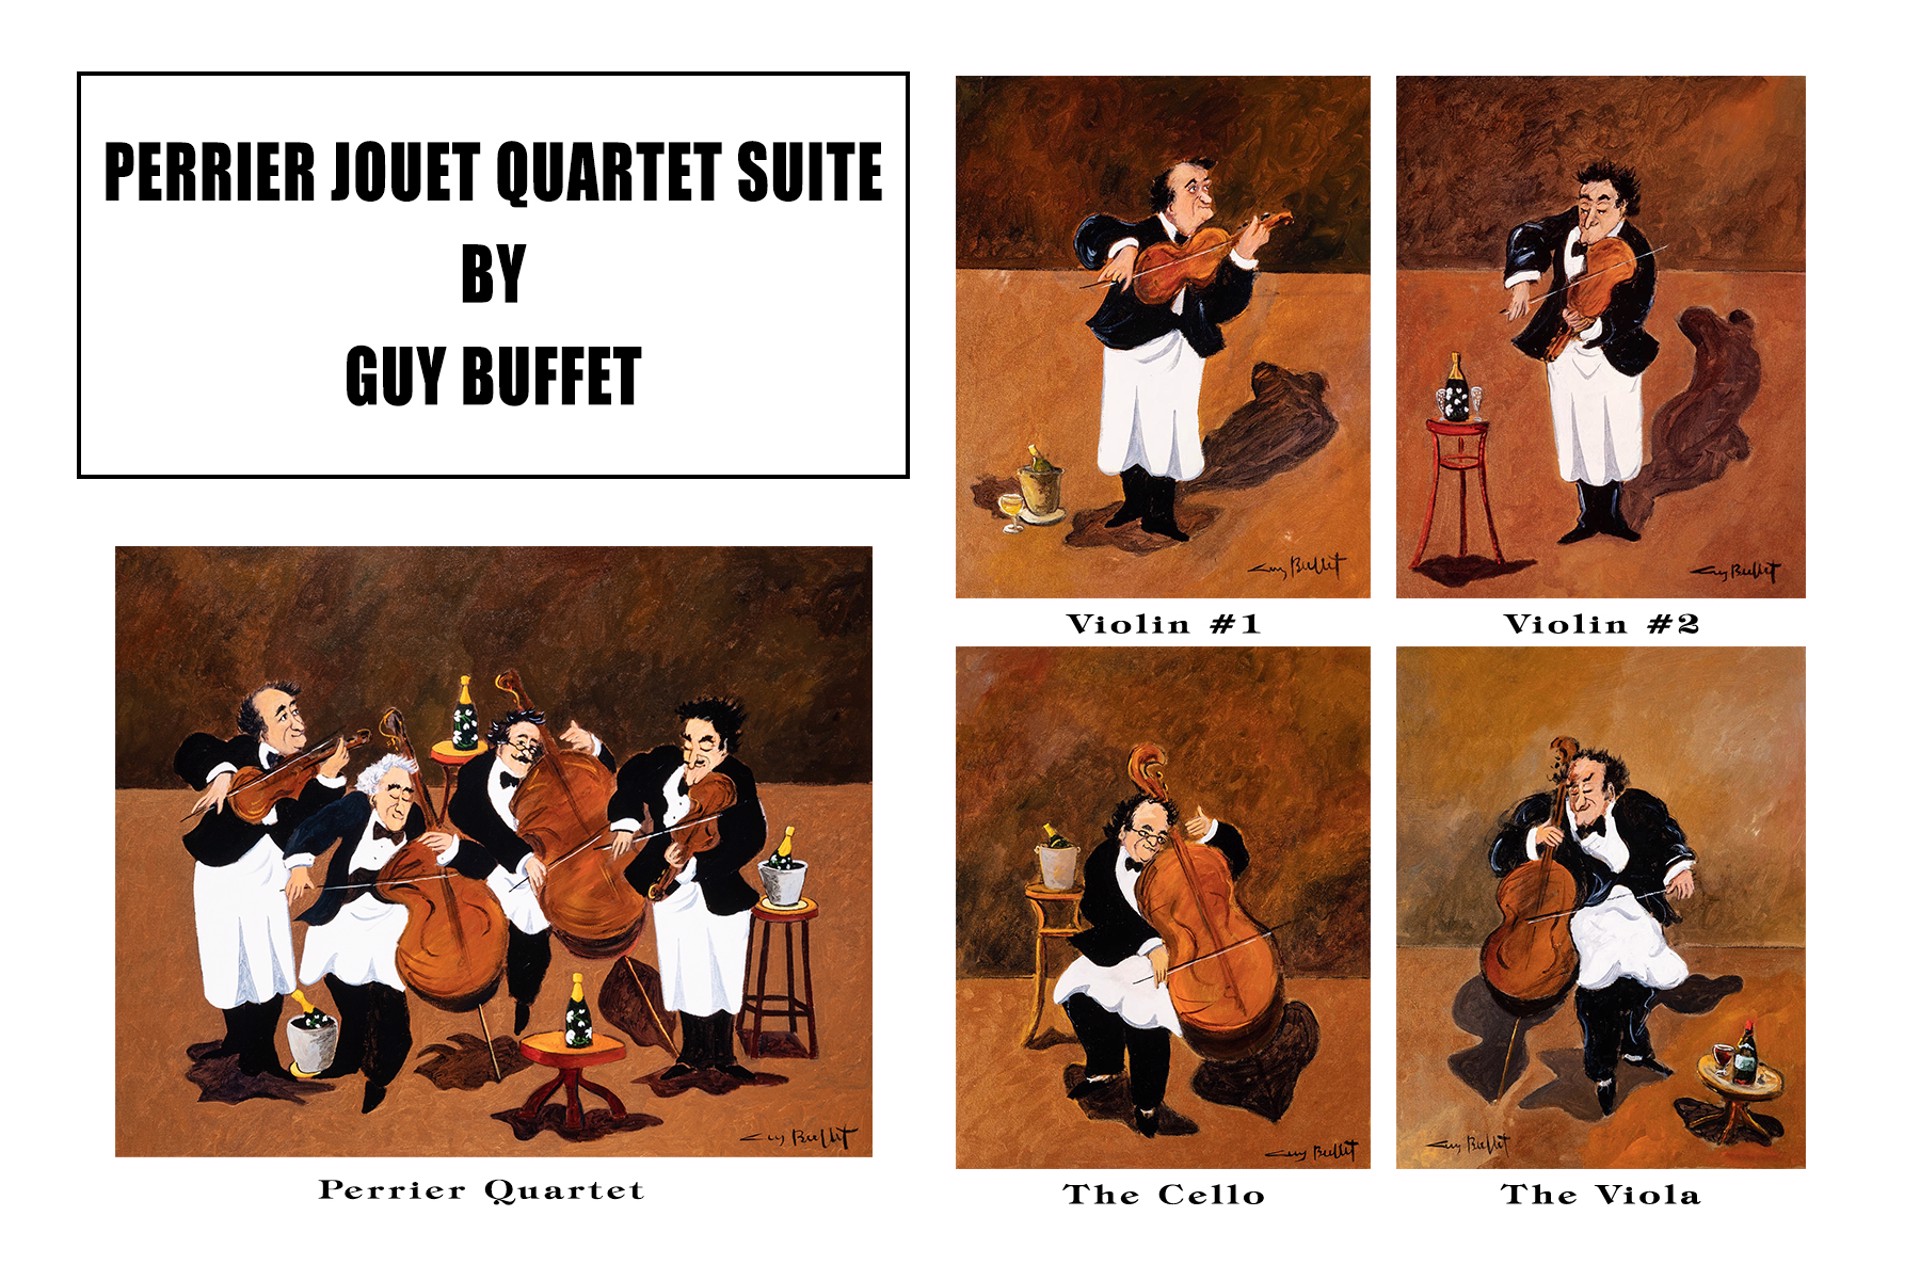 Perrier Jouet Quartet Suite - Perrier Jouet Quartet by Guy Buffet